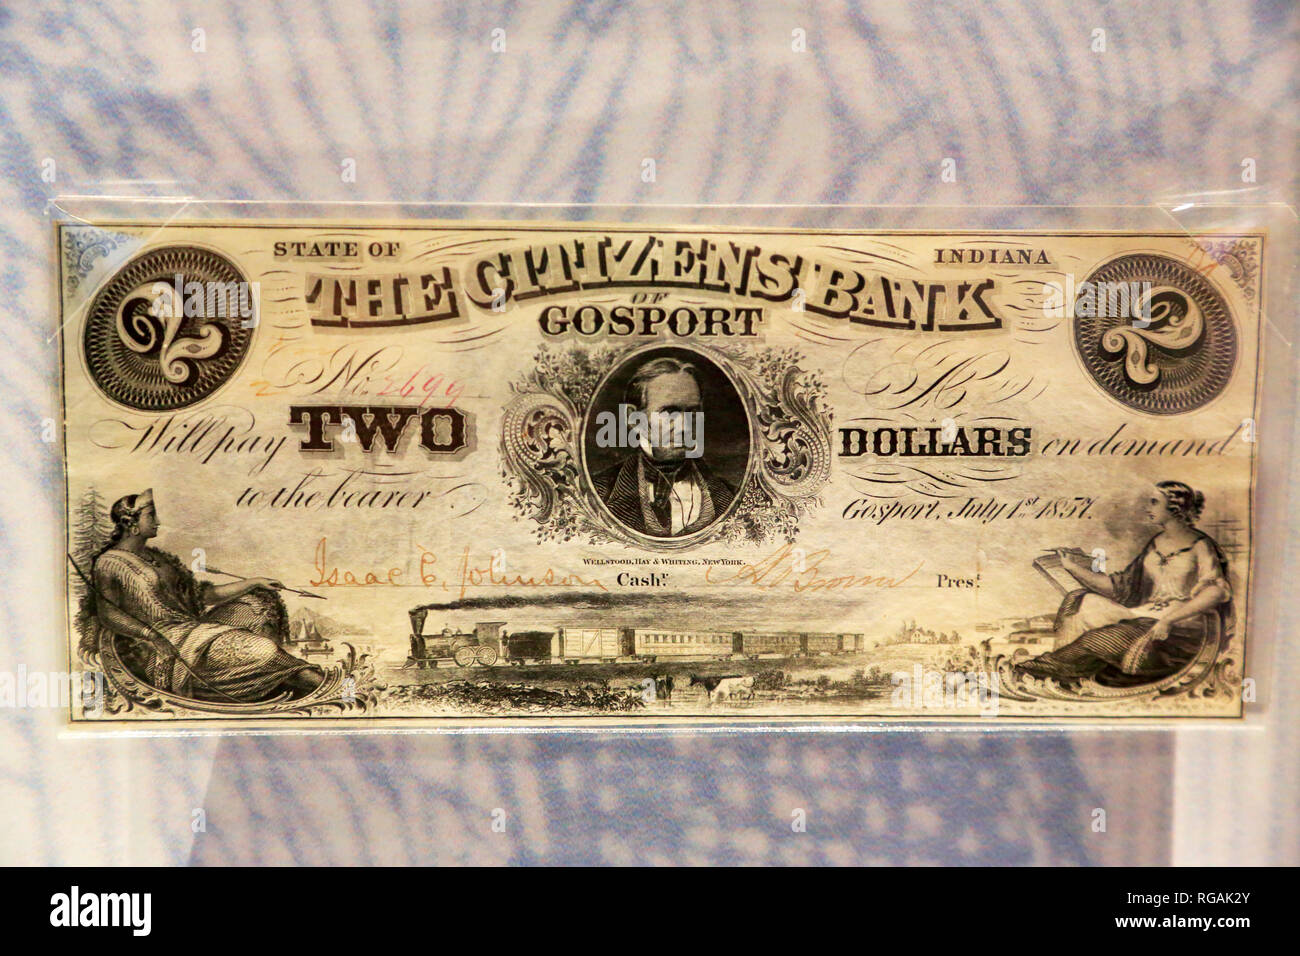 Un document historique deux dollars monnaie émise par la banque des citoyens dans l'Indiana l'affichage à l'argent Museum de Banque fédérale de réserve de Chicago. L'Illinois.USA Banque D'Images